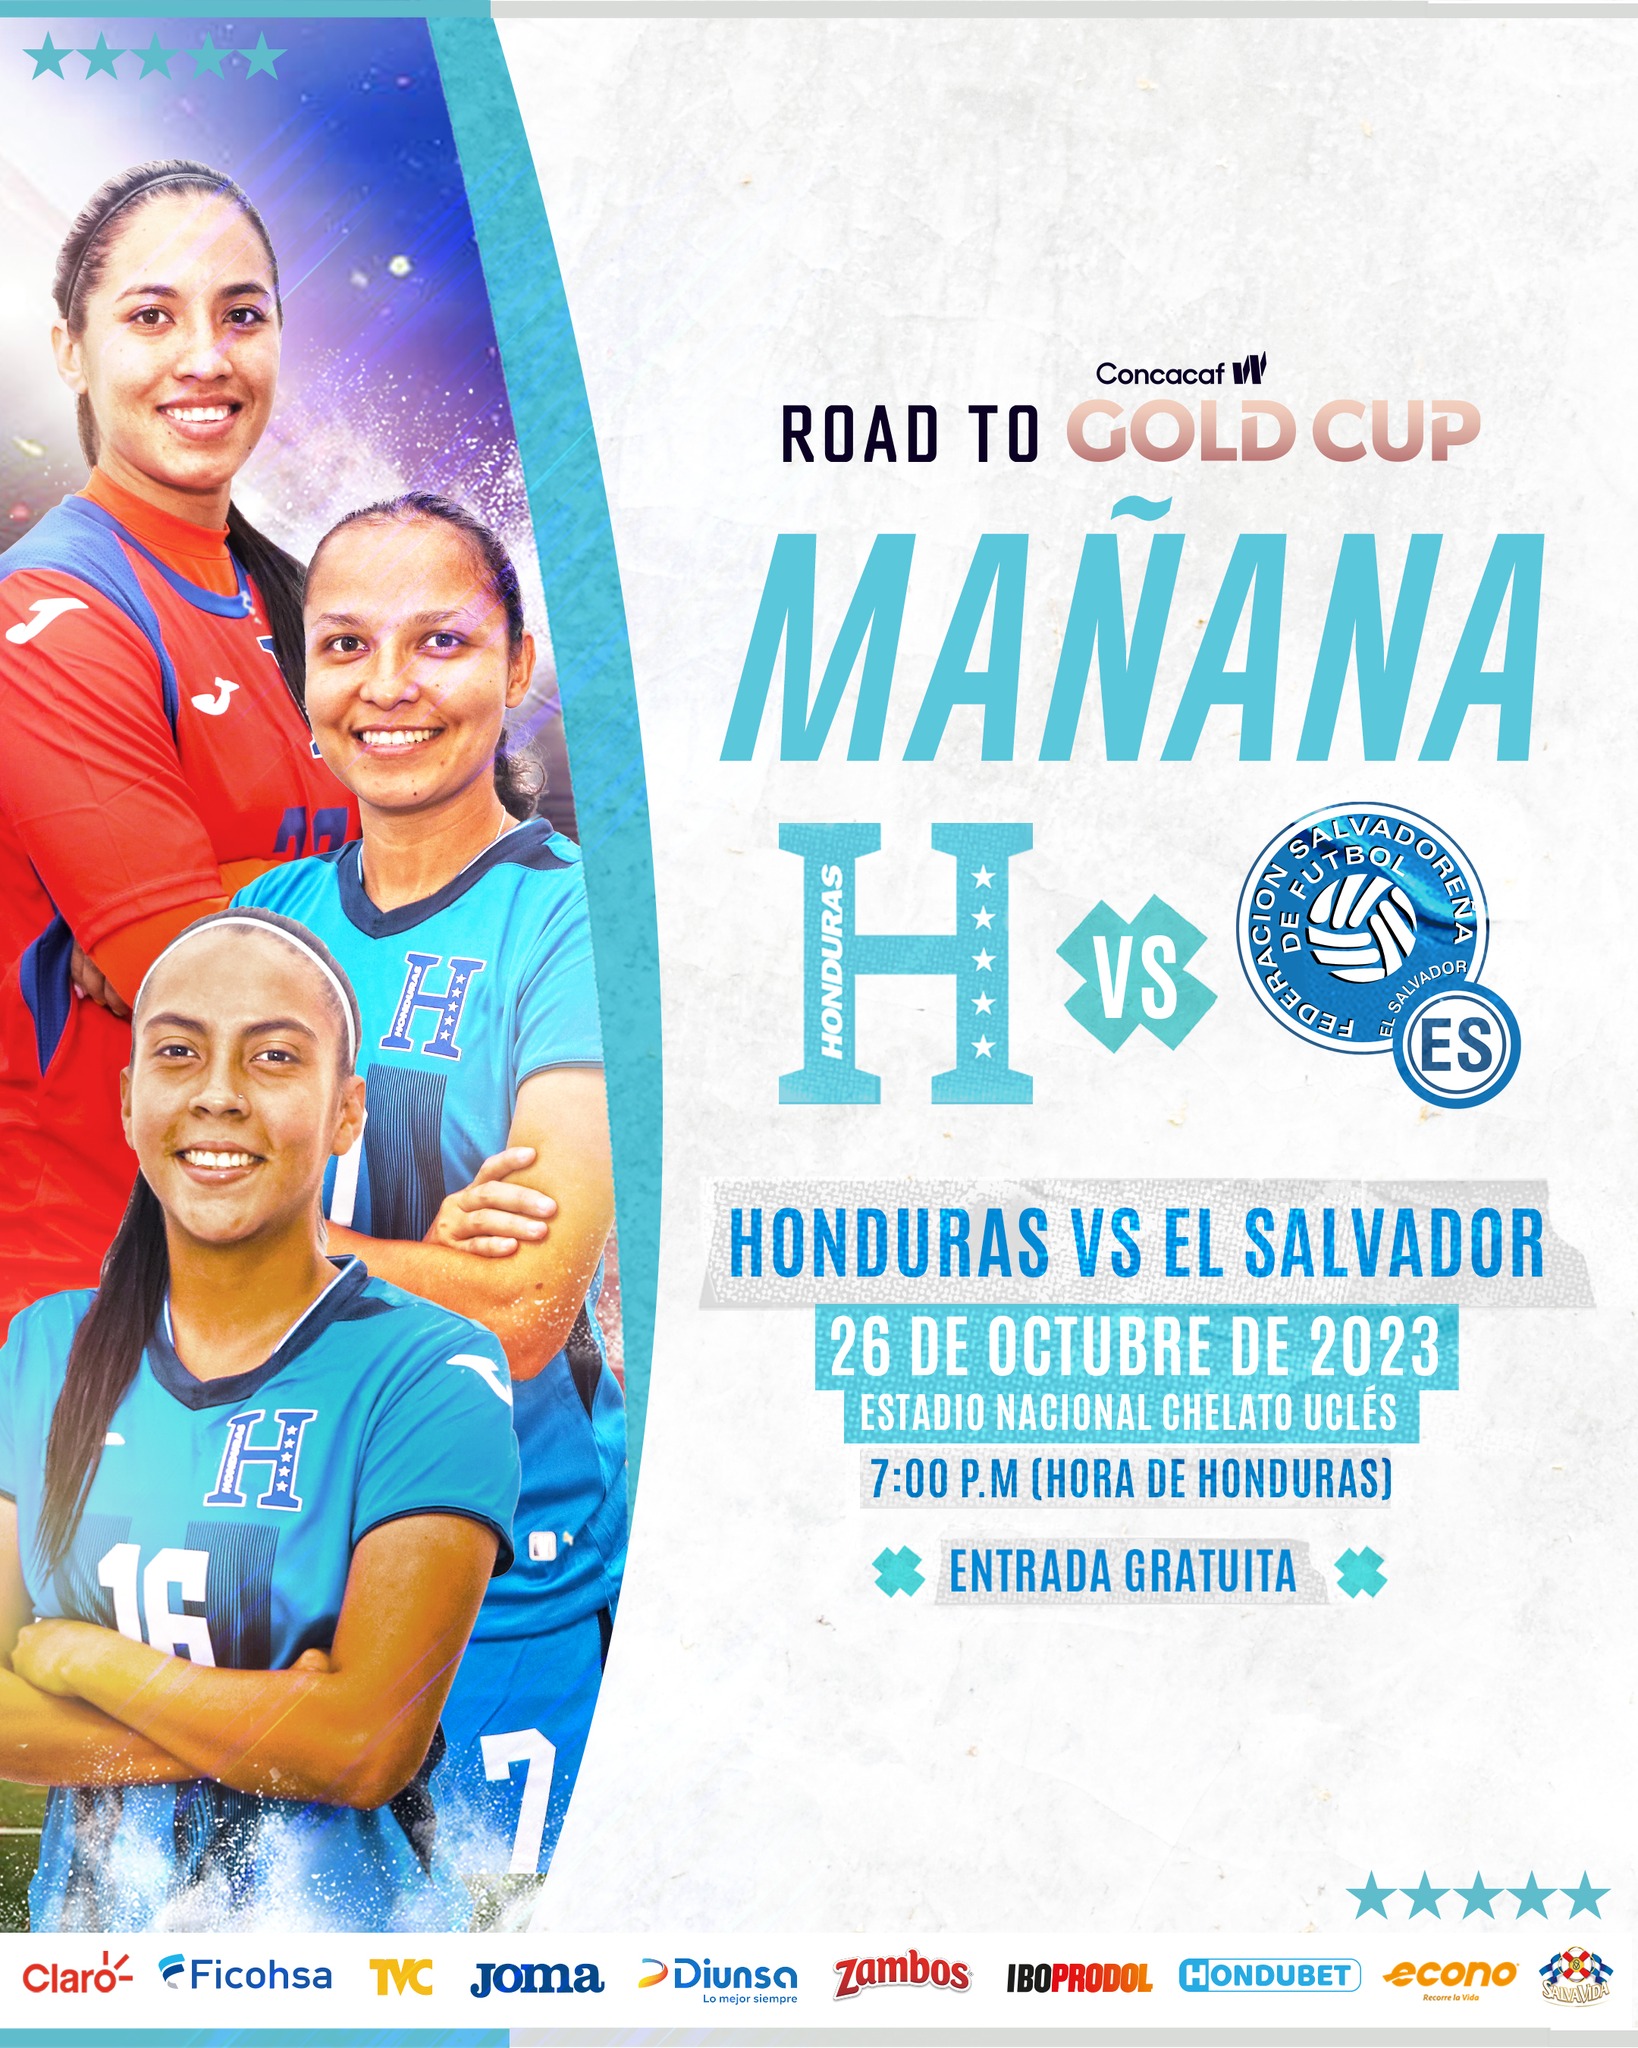 La Fenafuth decidió entrada gratis para el partido de este jueves entre Honduras y El Salvador en femenino.